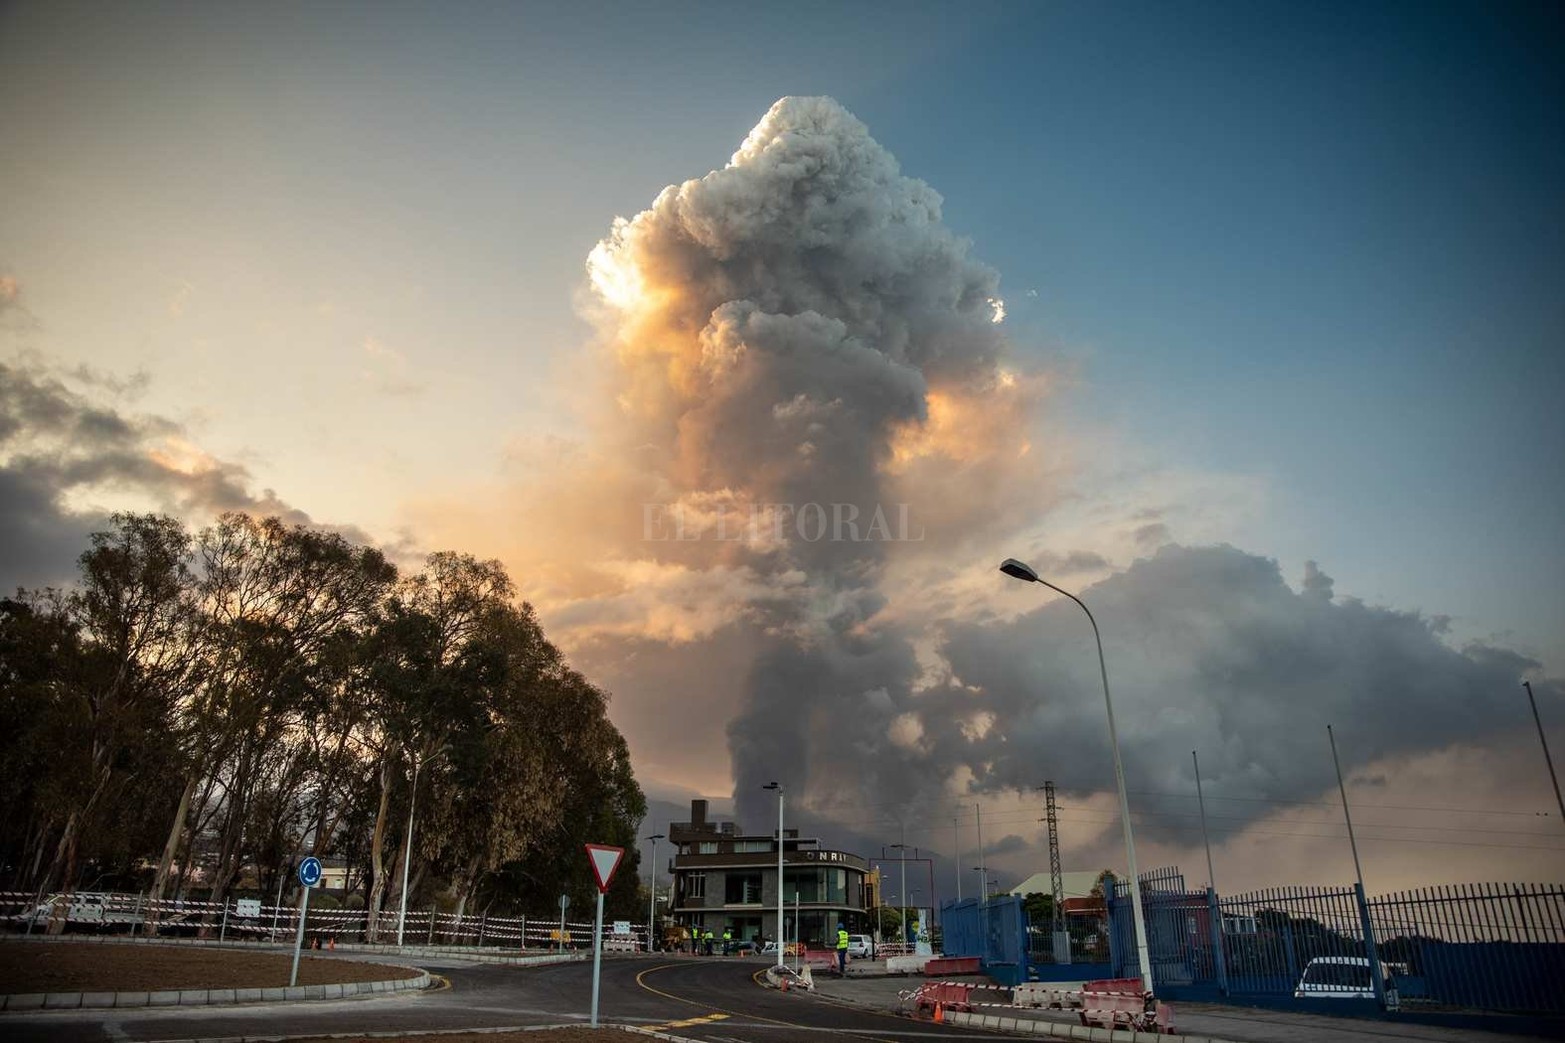 Erupción del volcán en La Palma, una de las islas de la comunidad de Canarias, España. La altura de la columna de humo alcanza 4,5 kilómetros.